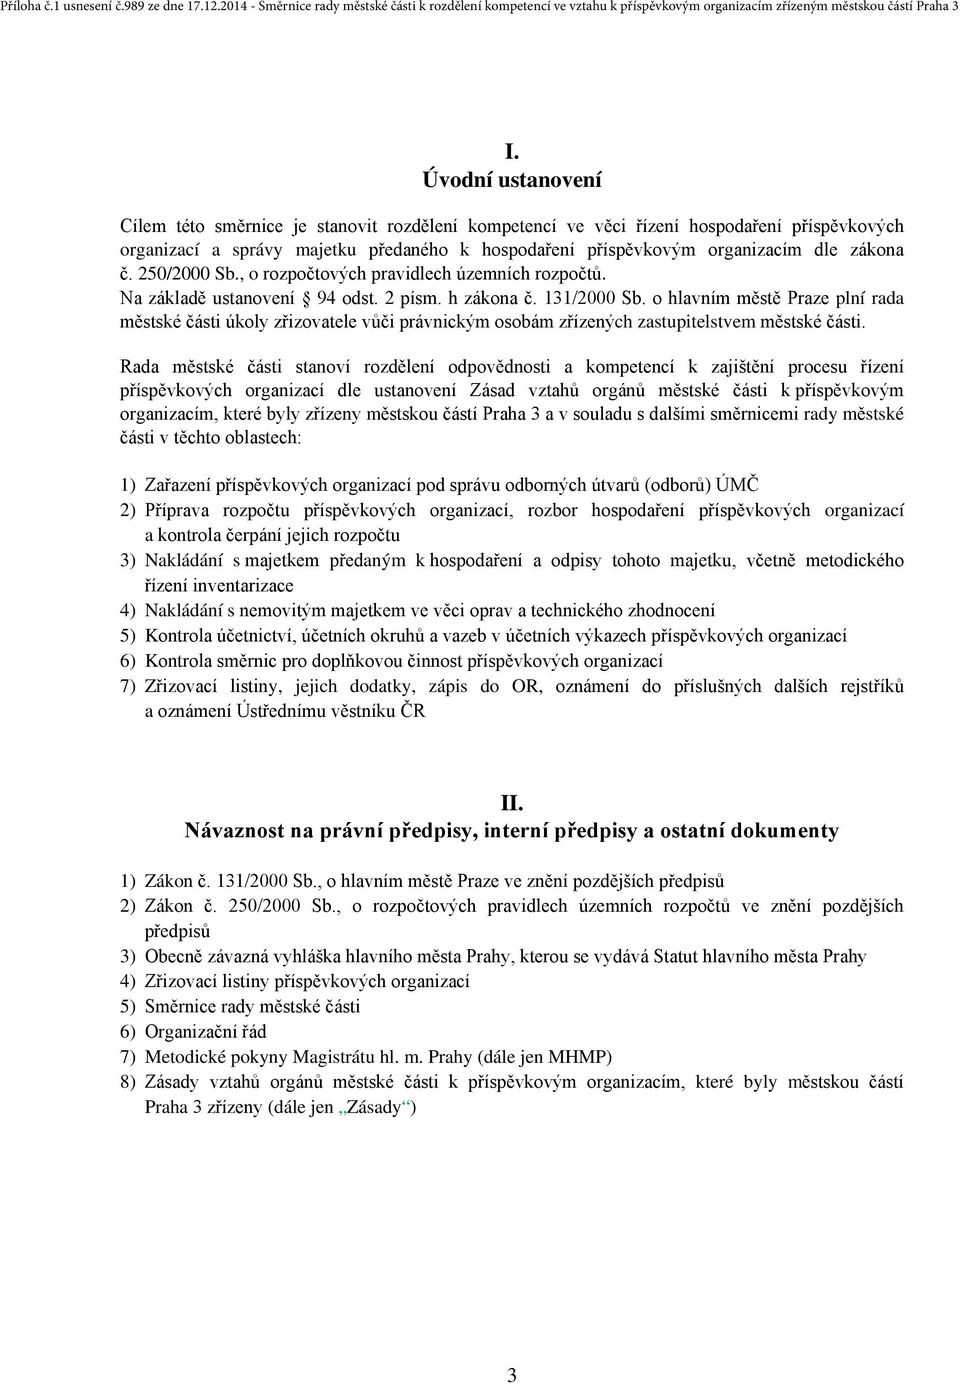 o hlavním městě Praze plní rada městské části úkoly zřizovatele vůči právnickým osobám zřízených zastupitelstvem městské části.